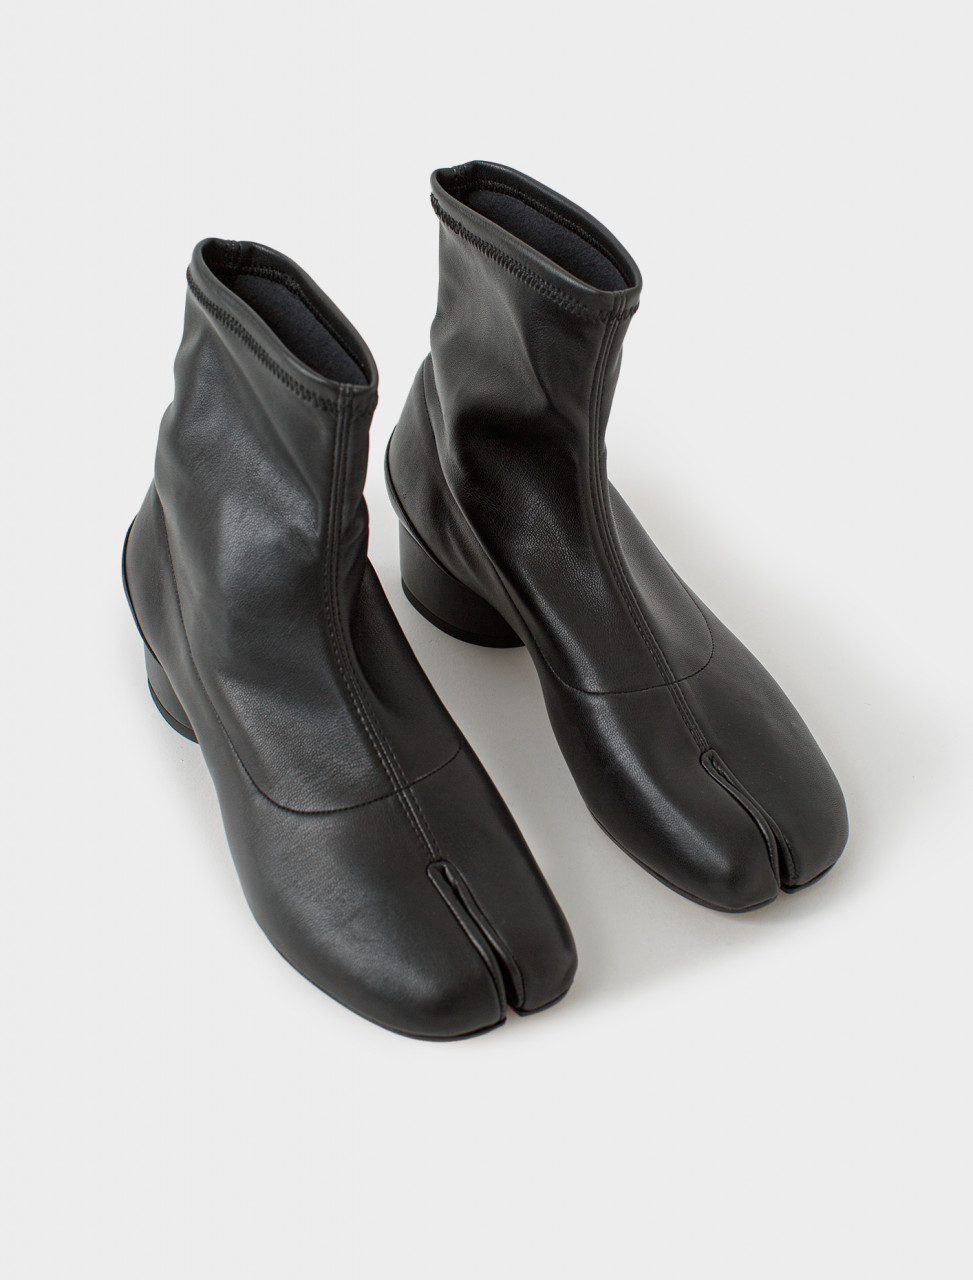 Maison Margiela Tabi Sock-Boot in Black | Voo Store Berlin | Worldwide ...